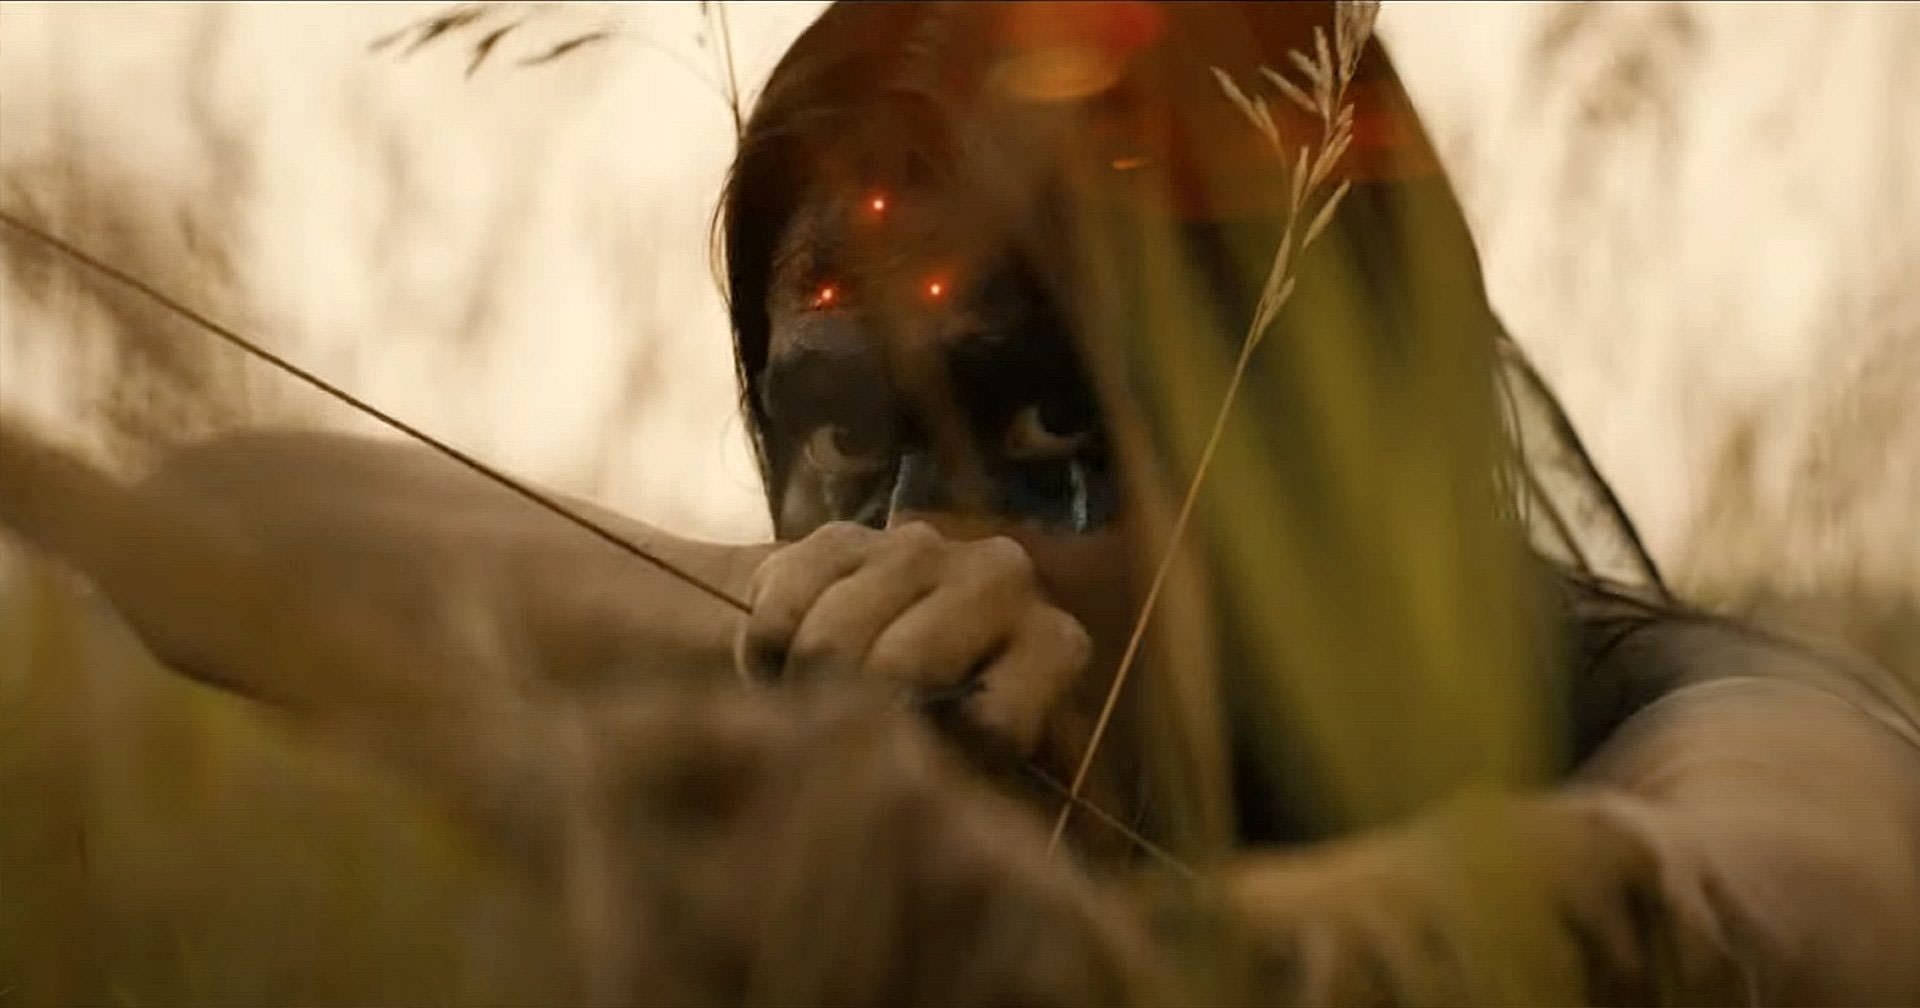 سرخ‌پوستی که کمانی را در میانه‌ی علف‌زار نشانه رفته در صحنه‌ای از فیلم طعمه